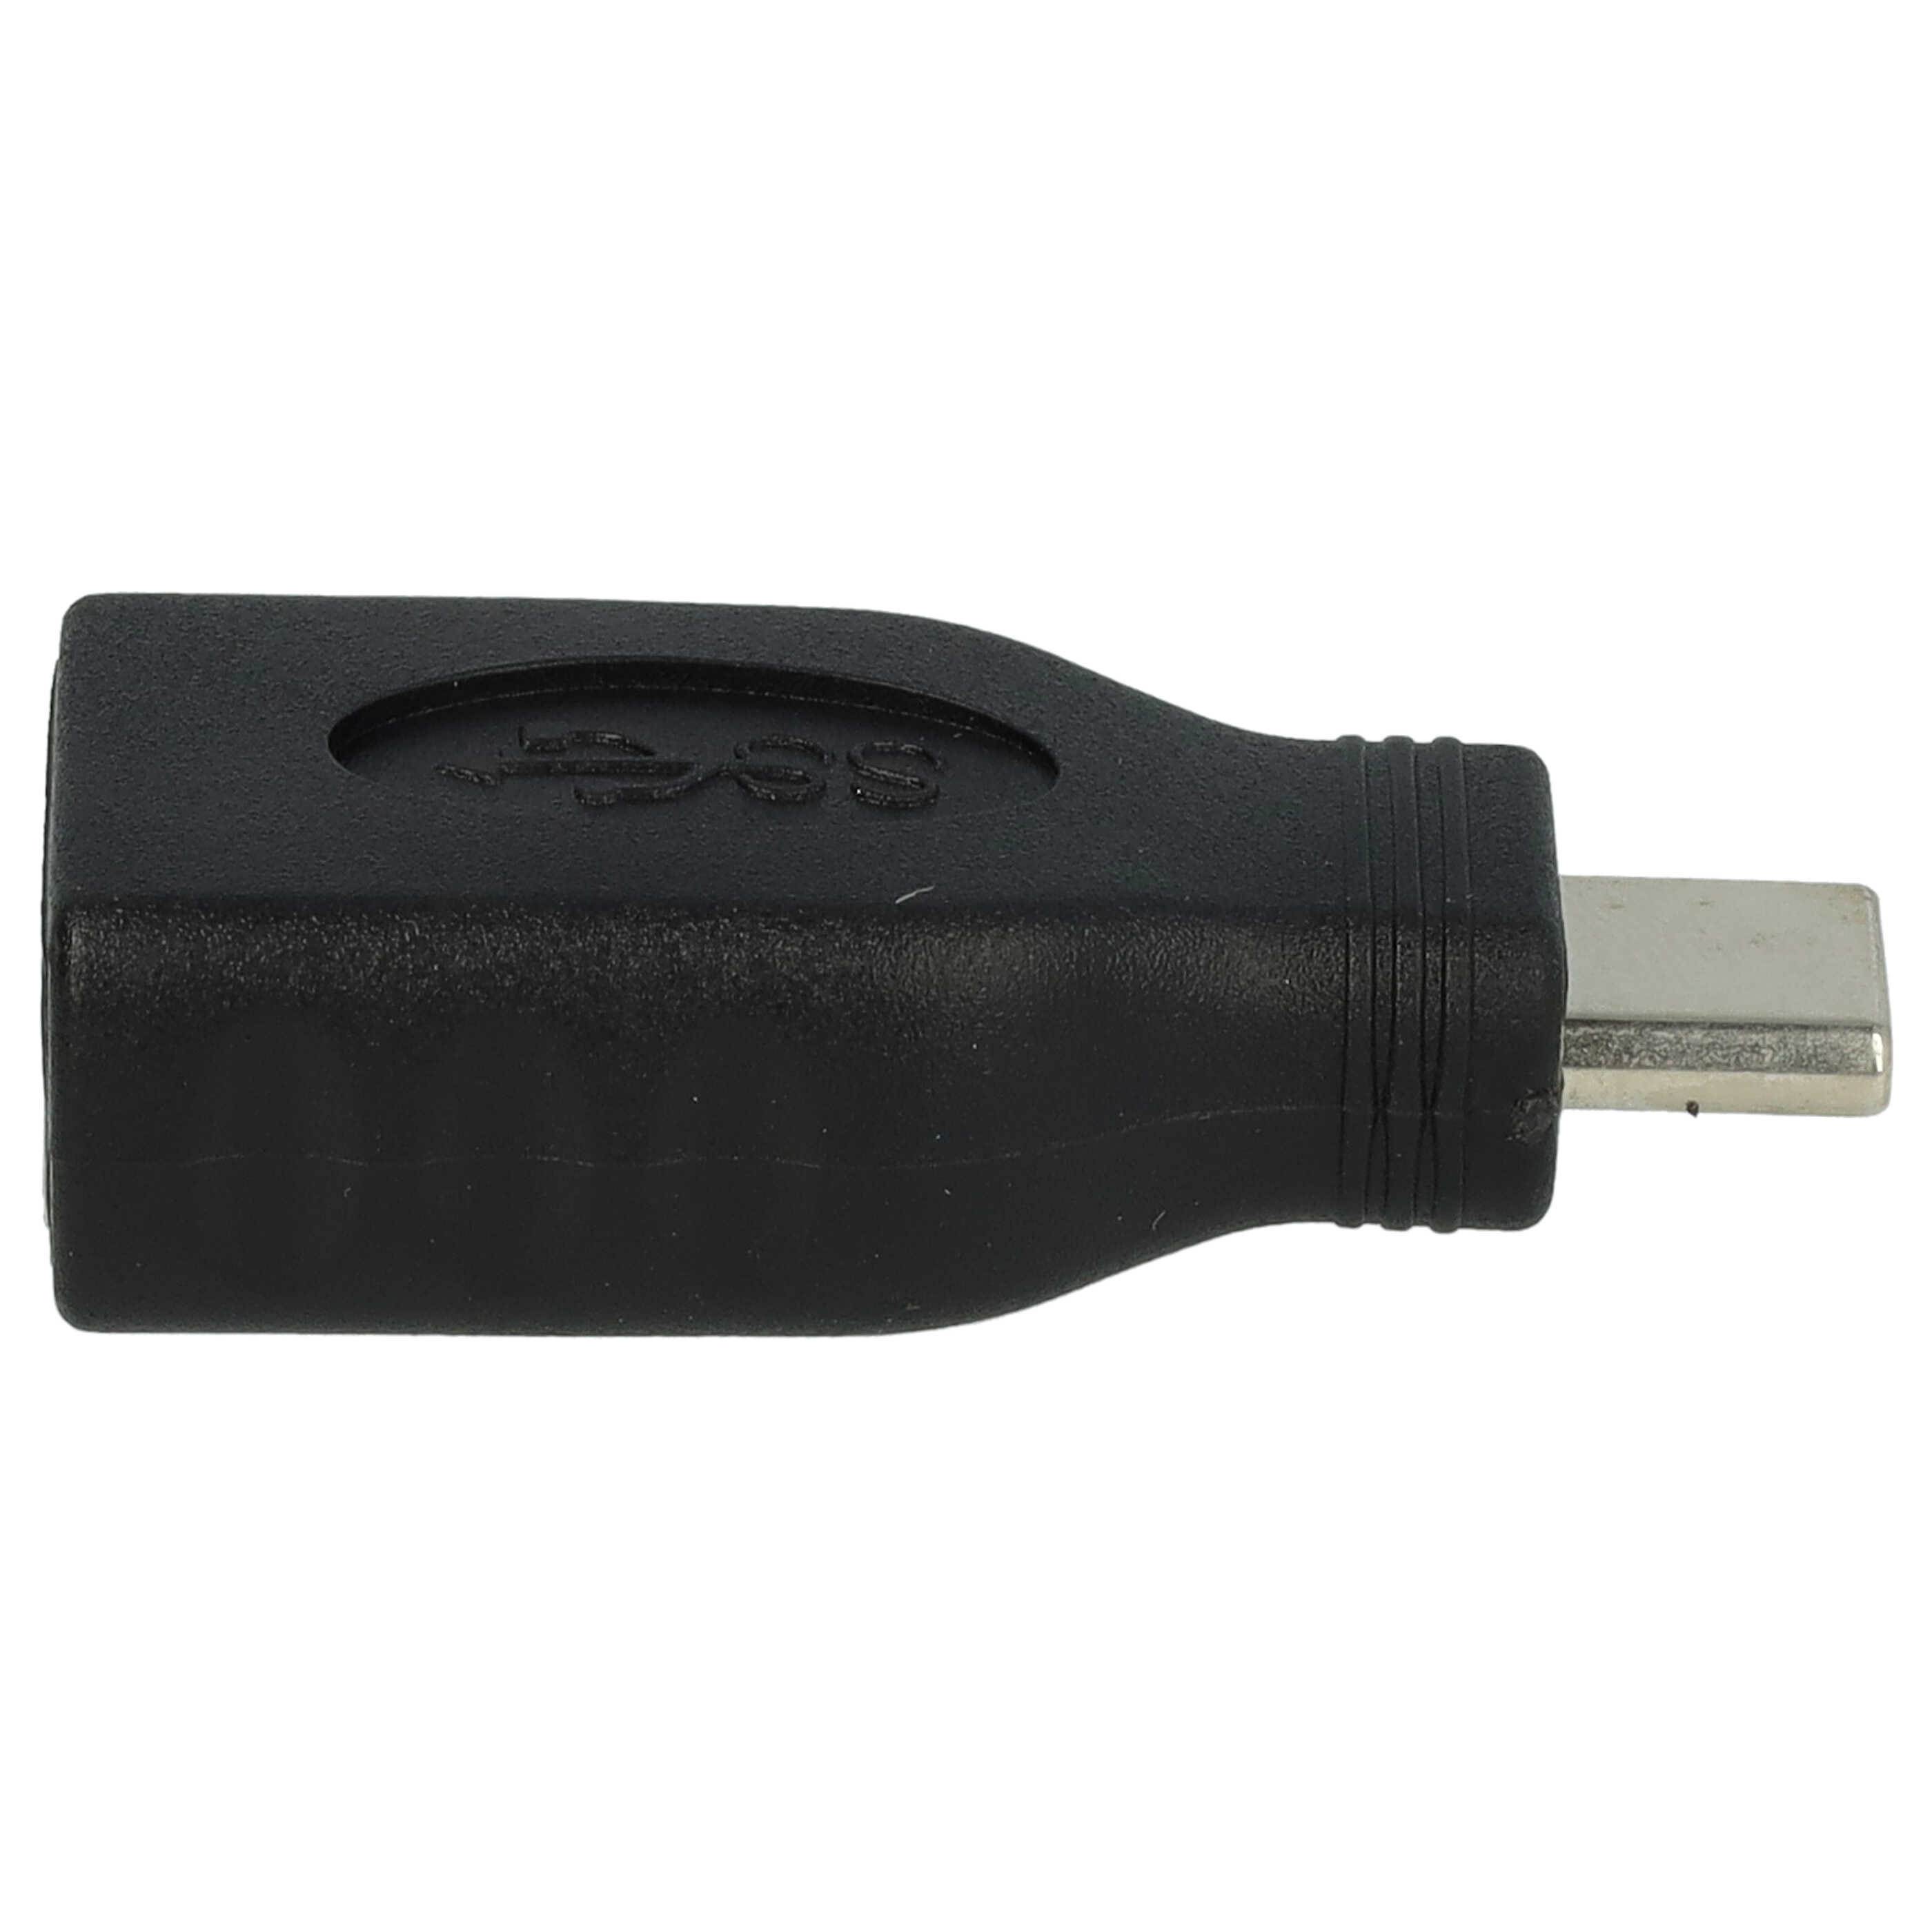 vhbw adattatore da USB tipo C a USB 3.0 compatibile con P9 Huawei - nero